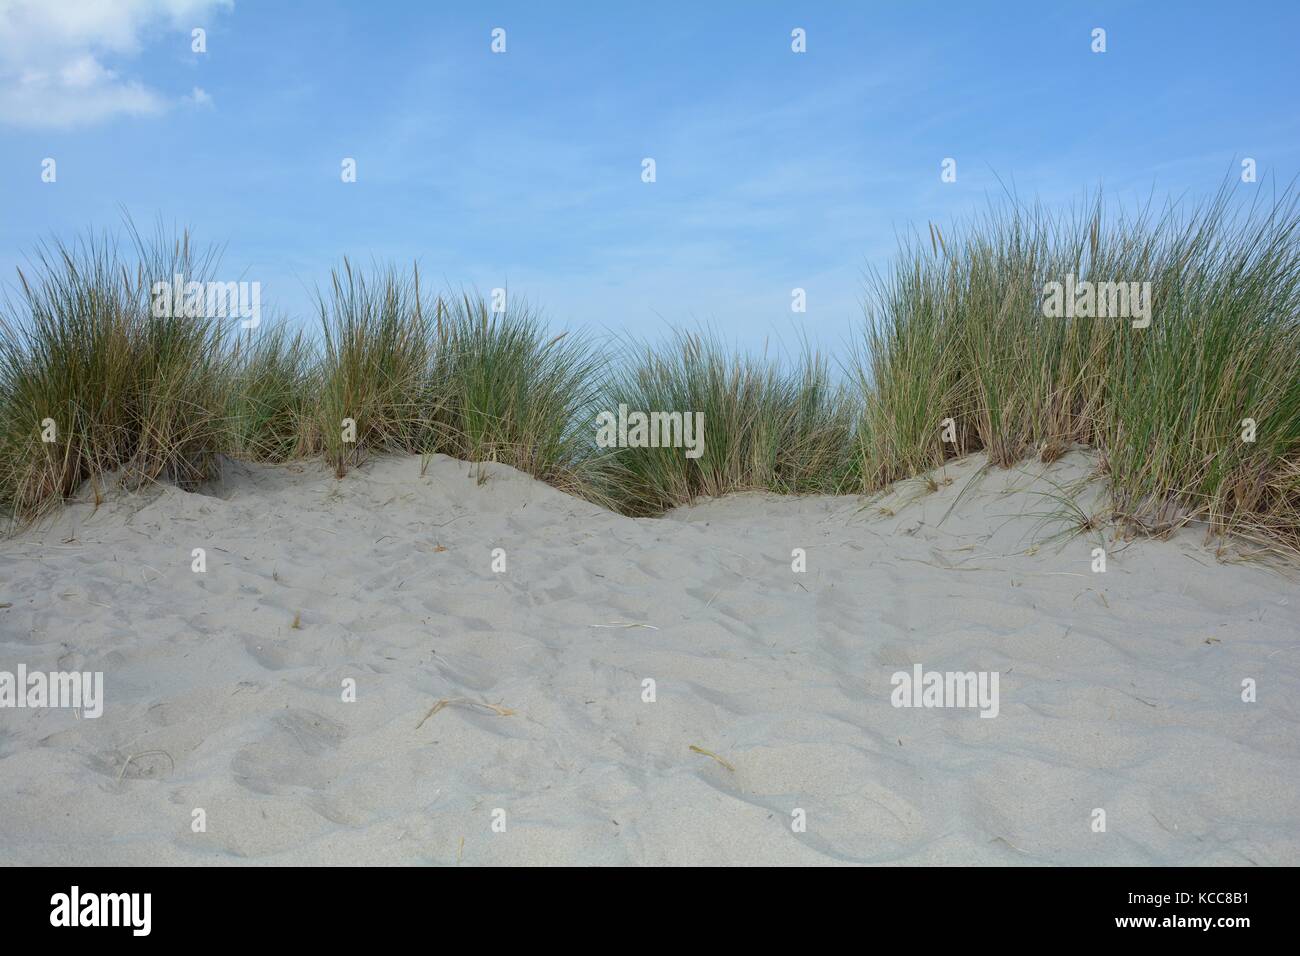 Spiaggia oat nelle dune di sabbia sulla costa del mare del Nord nei Paesi Bassi su zeeland sull'isola schouwen-duiveland Foto Stock